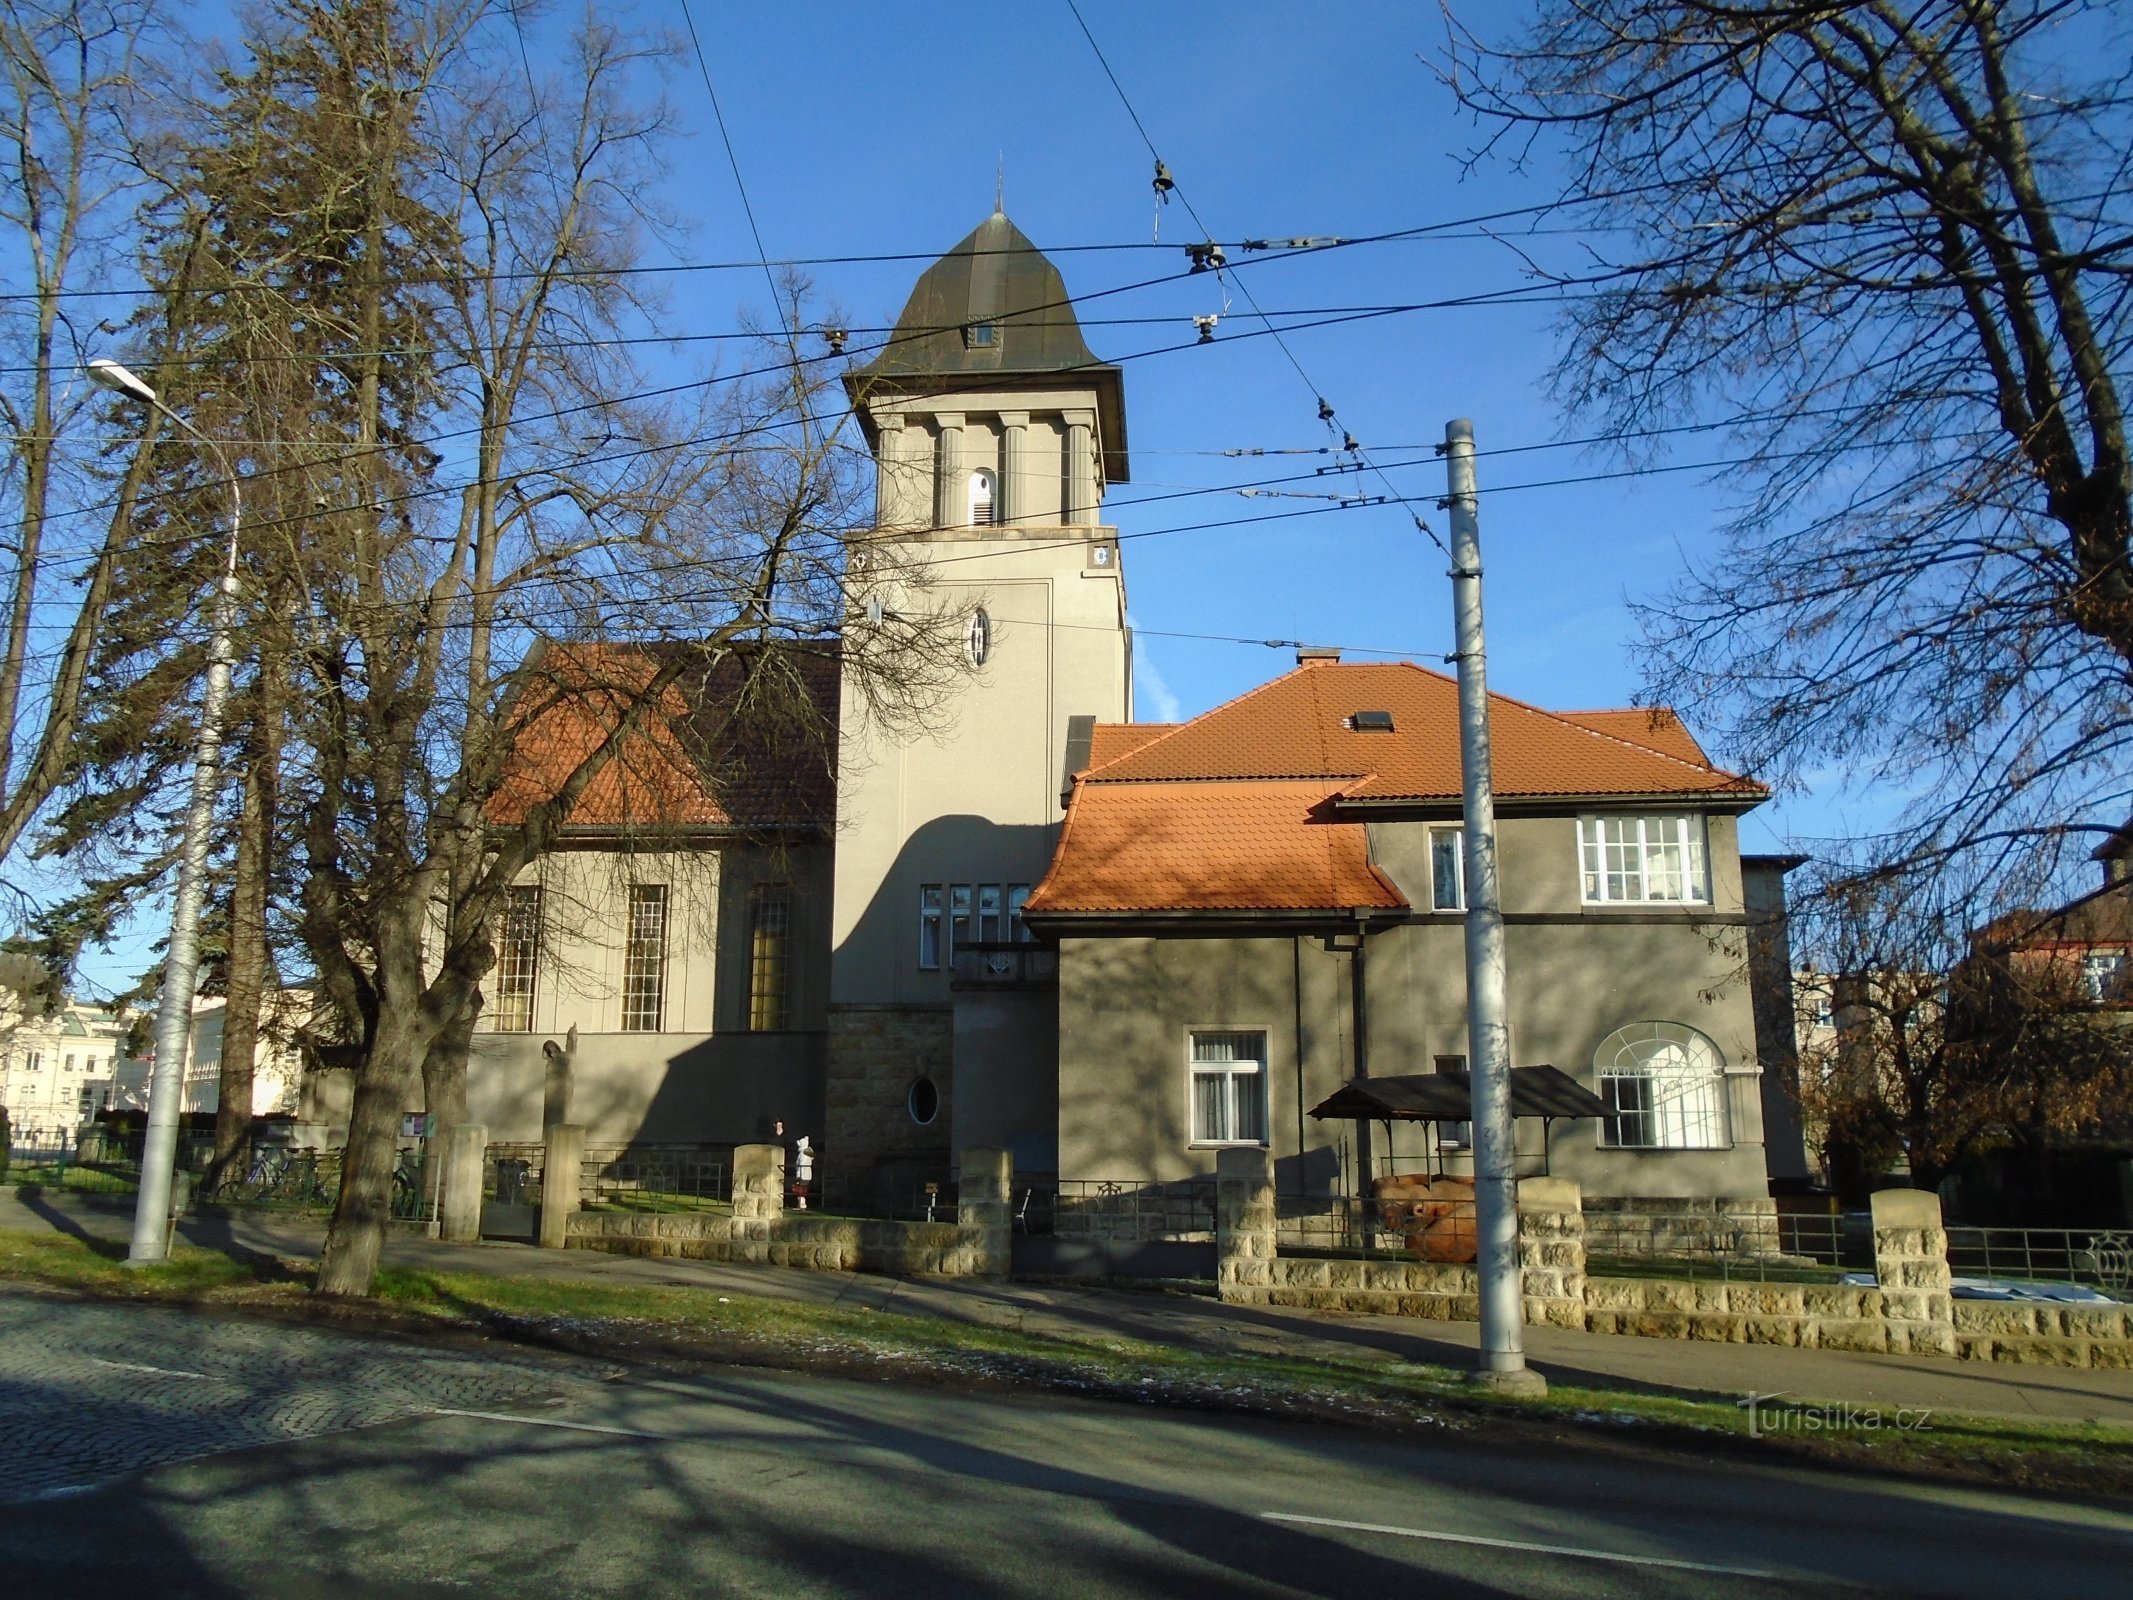 Evangelička crkva sa župnim dvorom (Hradec Králové, 10.12.2017.)